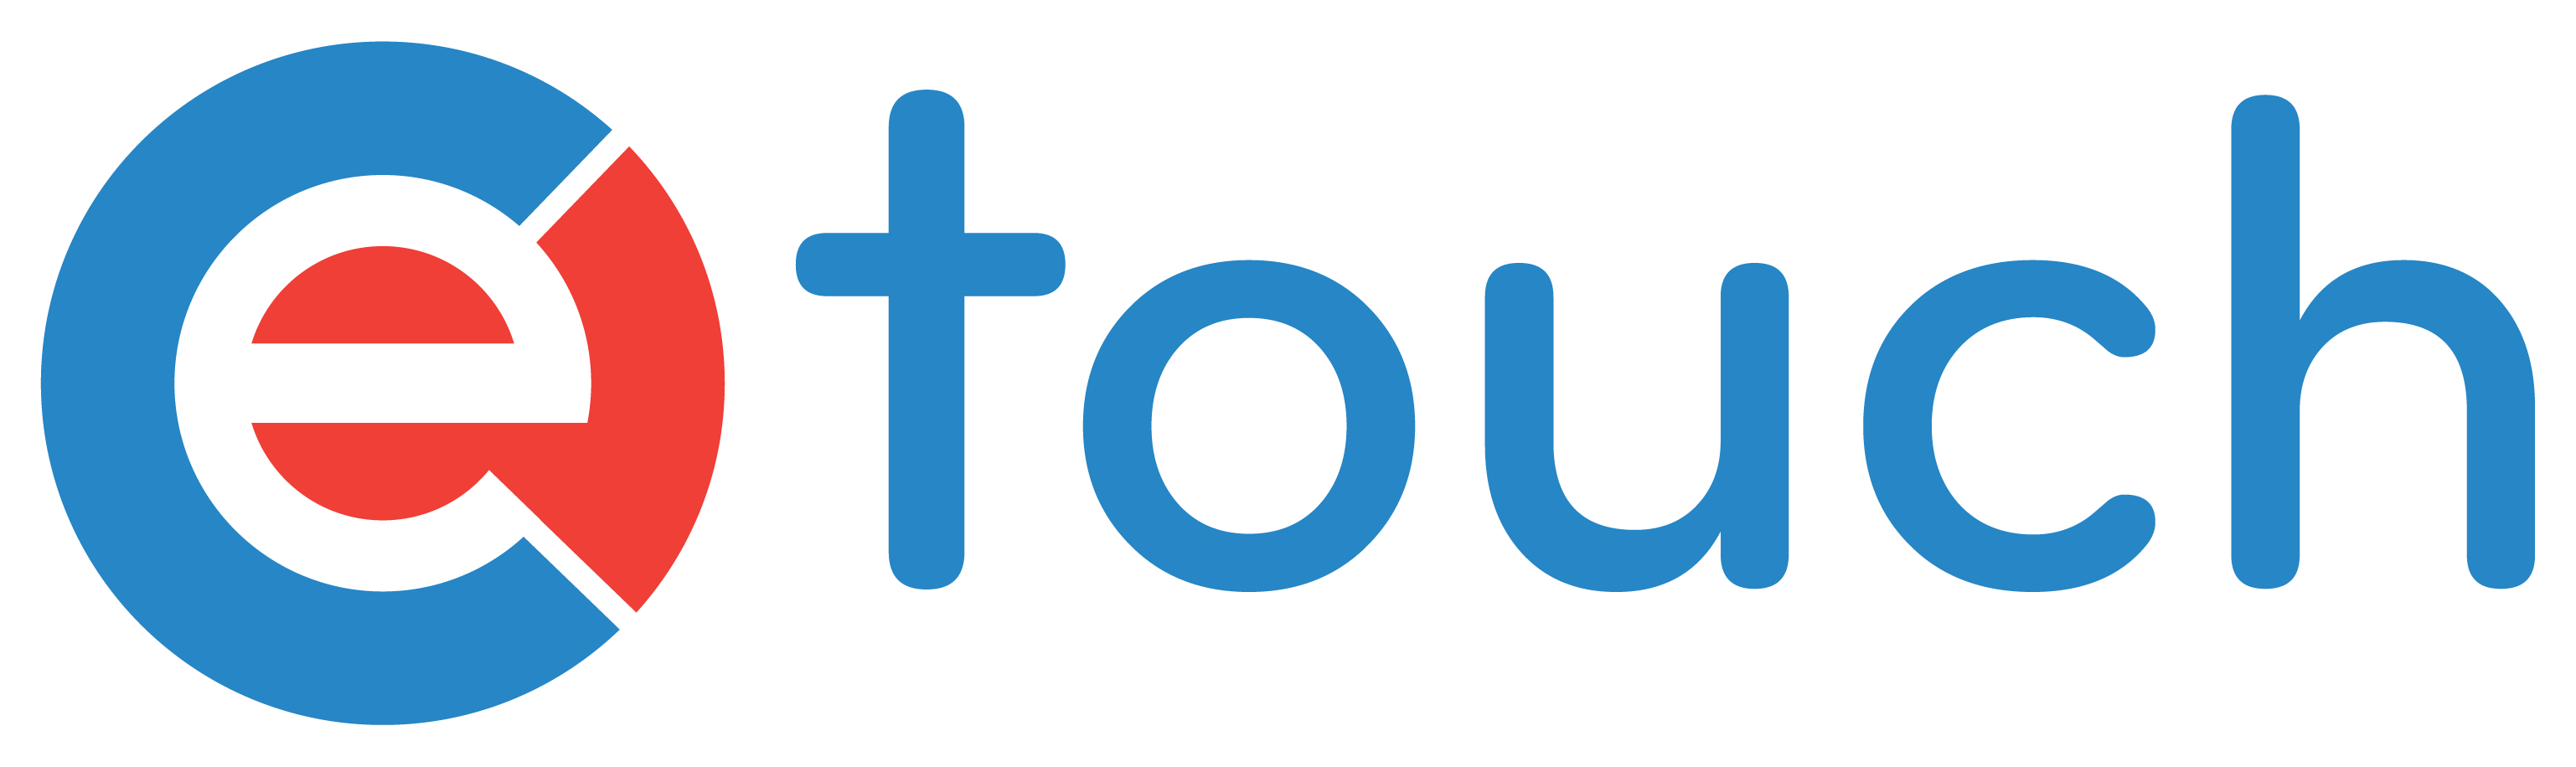 eTouch Logo